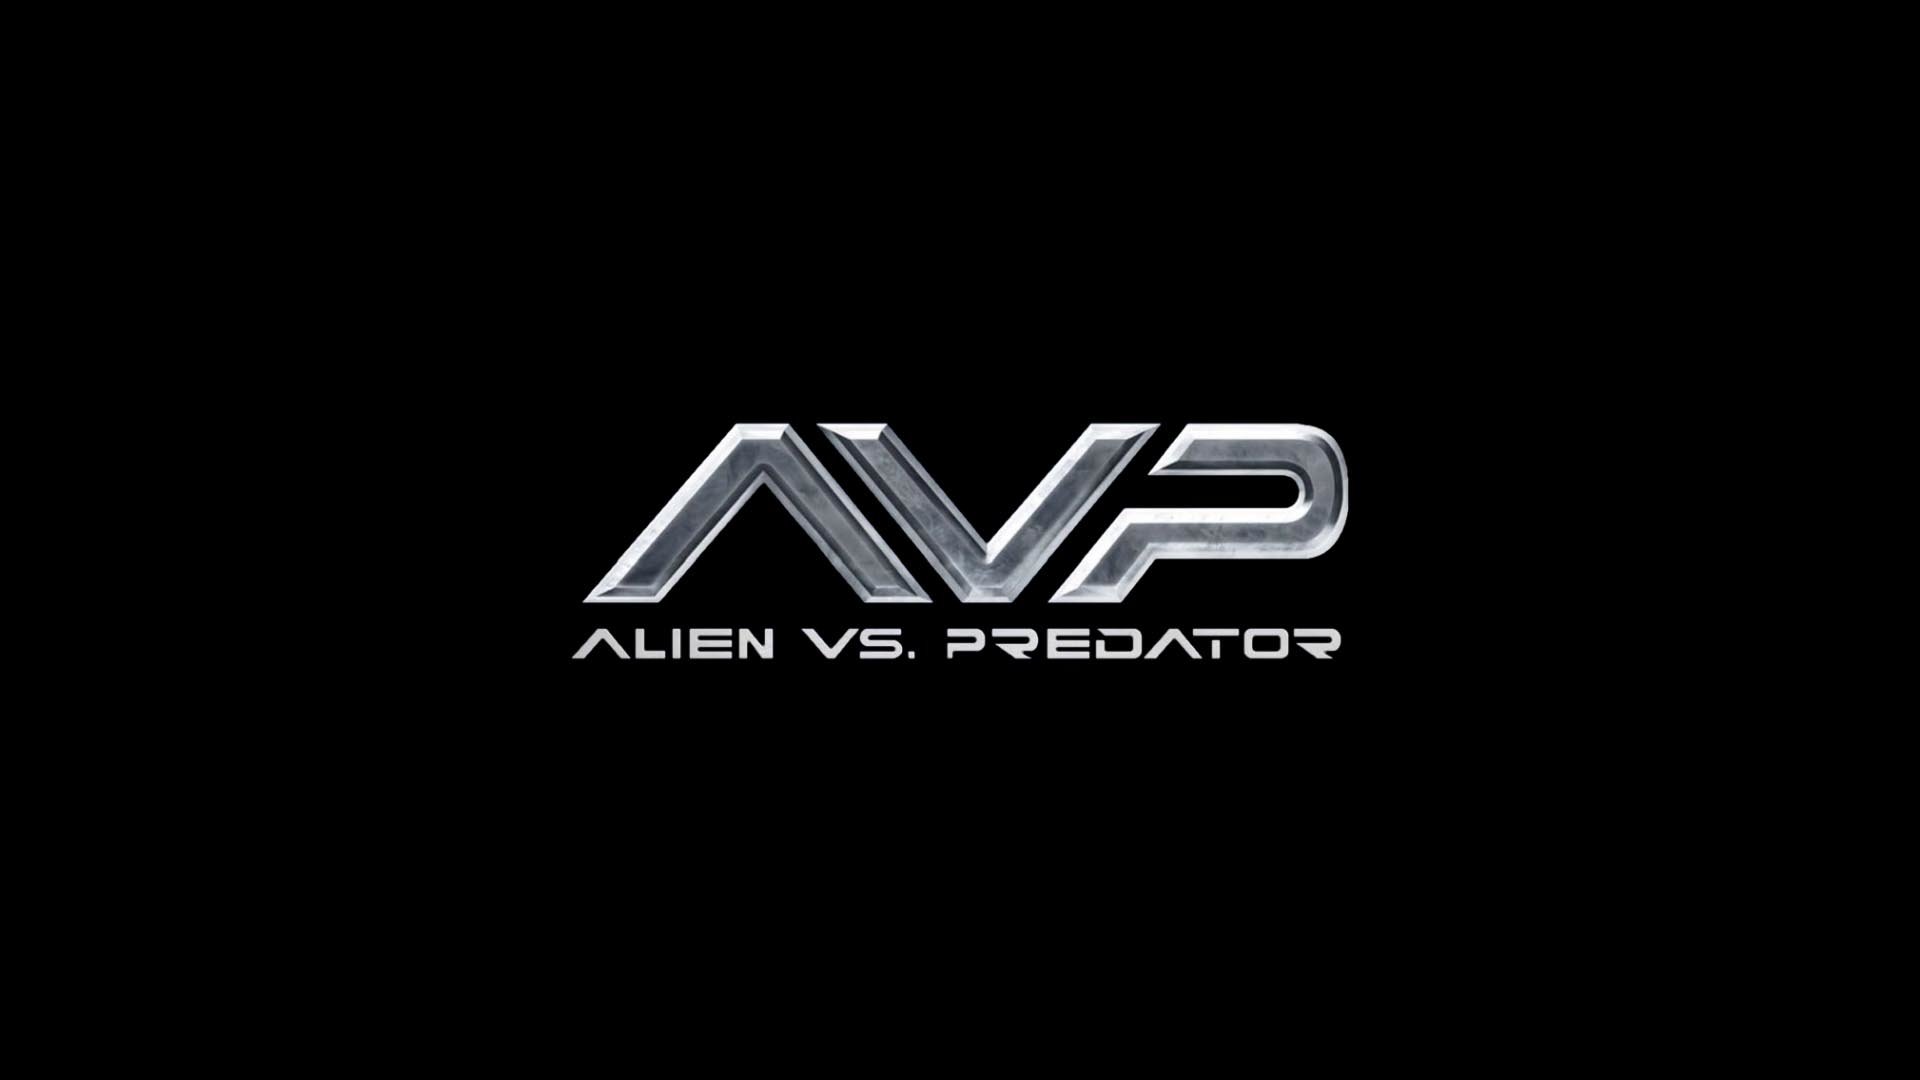 High resolution AVP: Alien Vs. Predator movie full hd 1920x1080 background ID:270182 for desktop